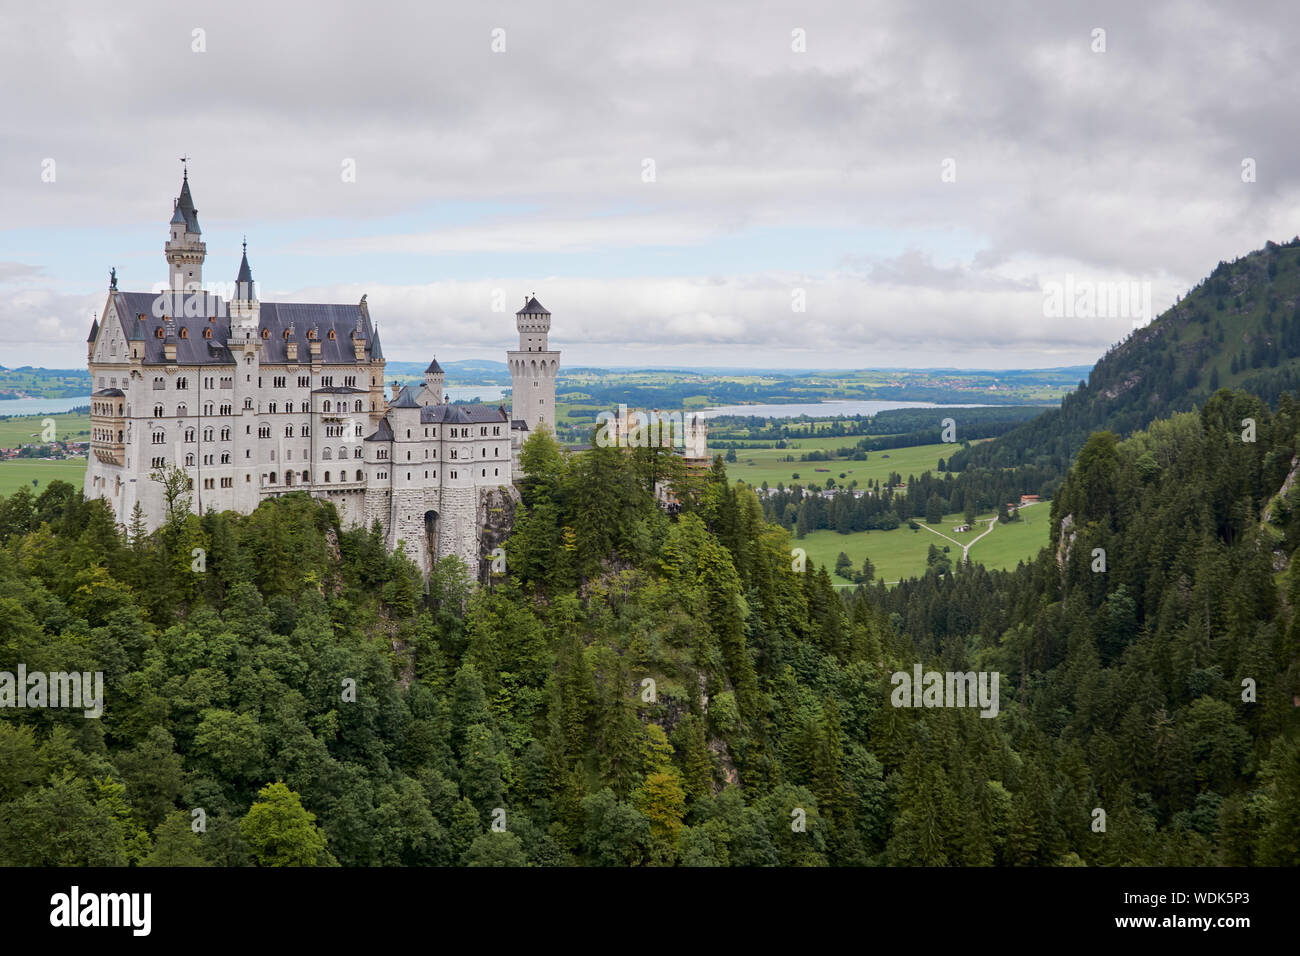 Blick auf den berühmten Touristenattraktion in den Bayerischen Alpen - das Schloss Neuschwanstein vor blauem Himmel und der Natur / Sommer 2019 Stockfoto